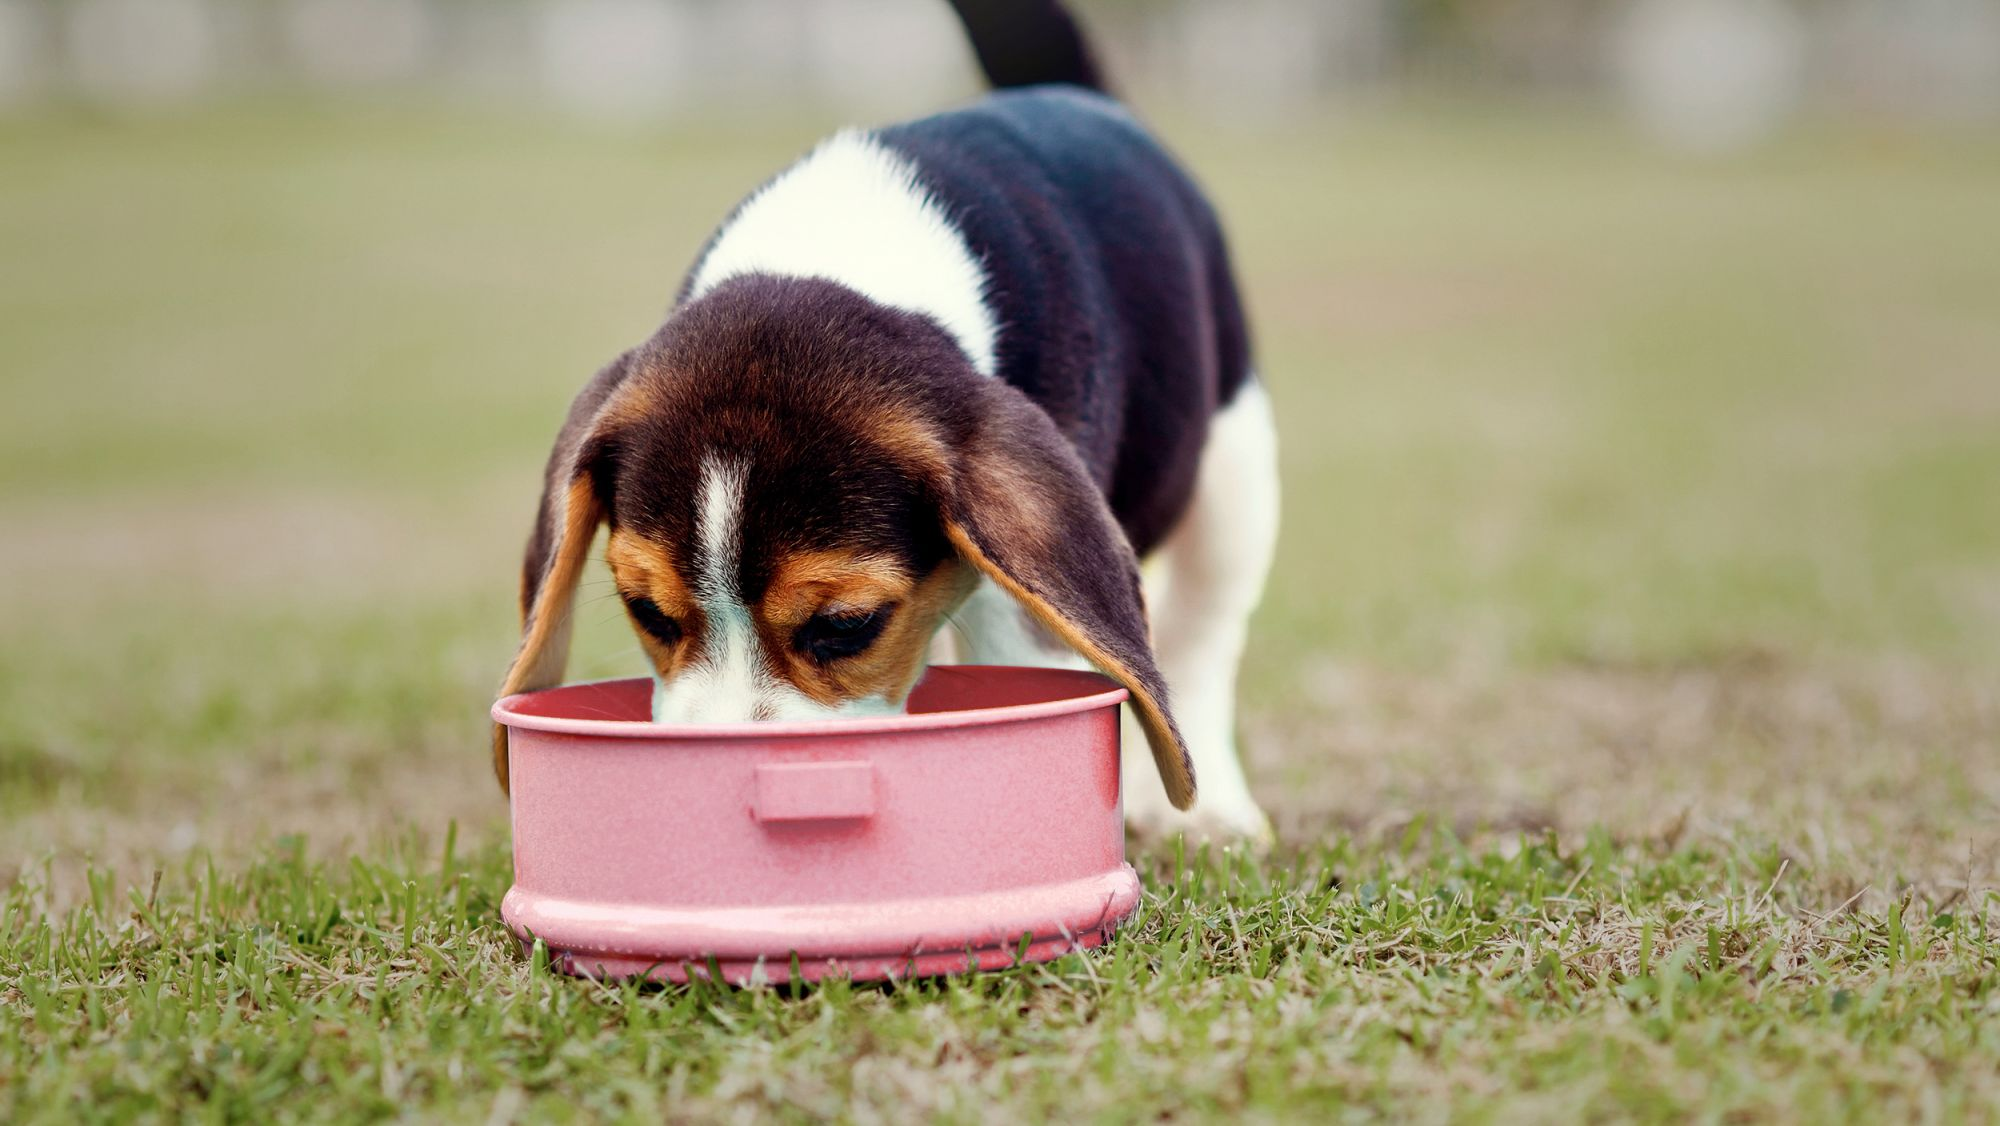 Auf einem Rasen steht ein Beagle-Welpe und frisst aus einem rosafarbenen Napf